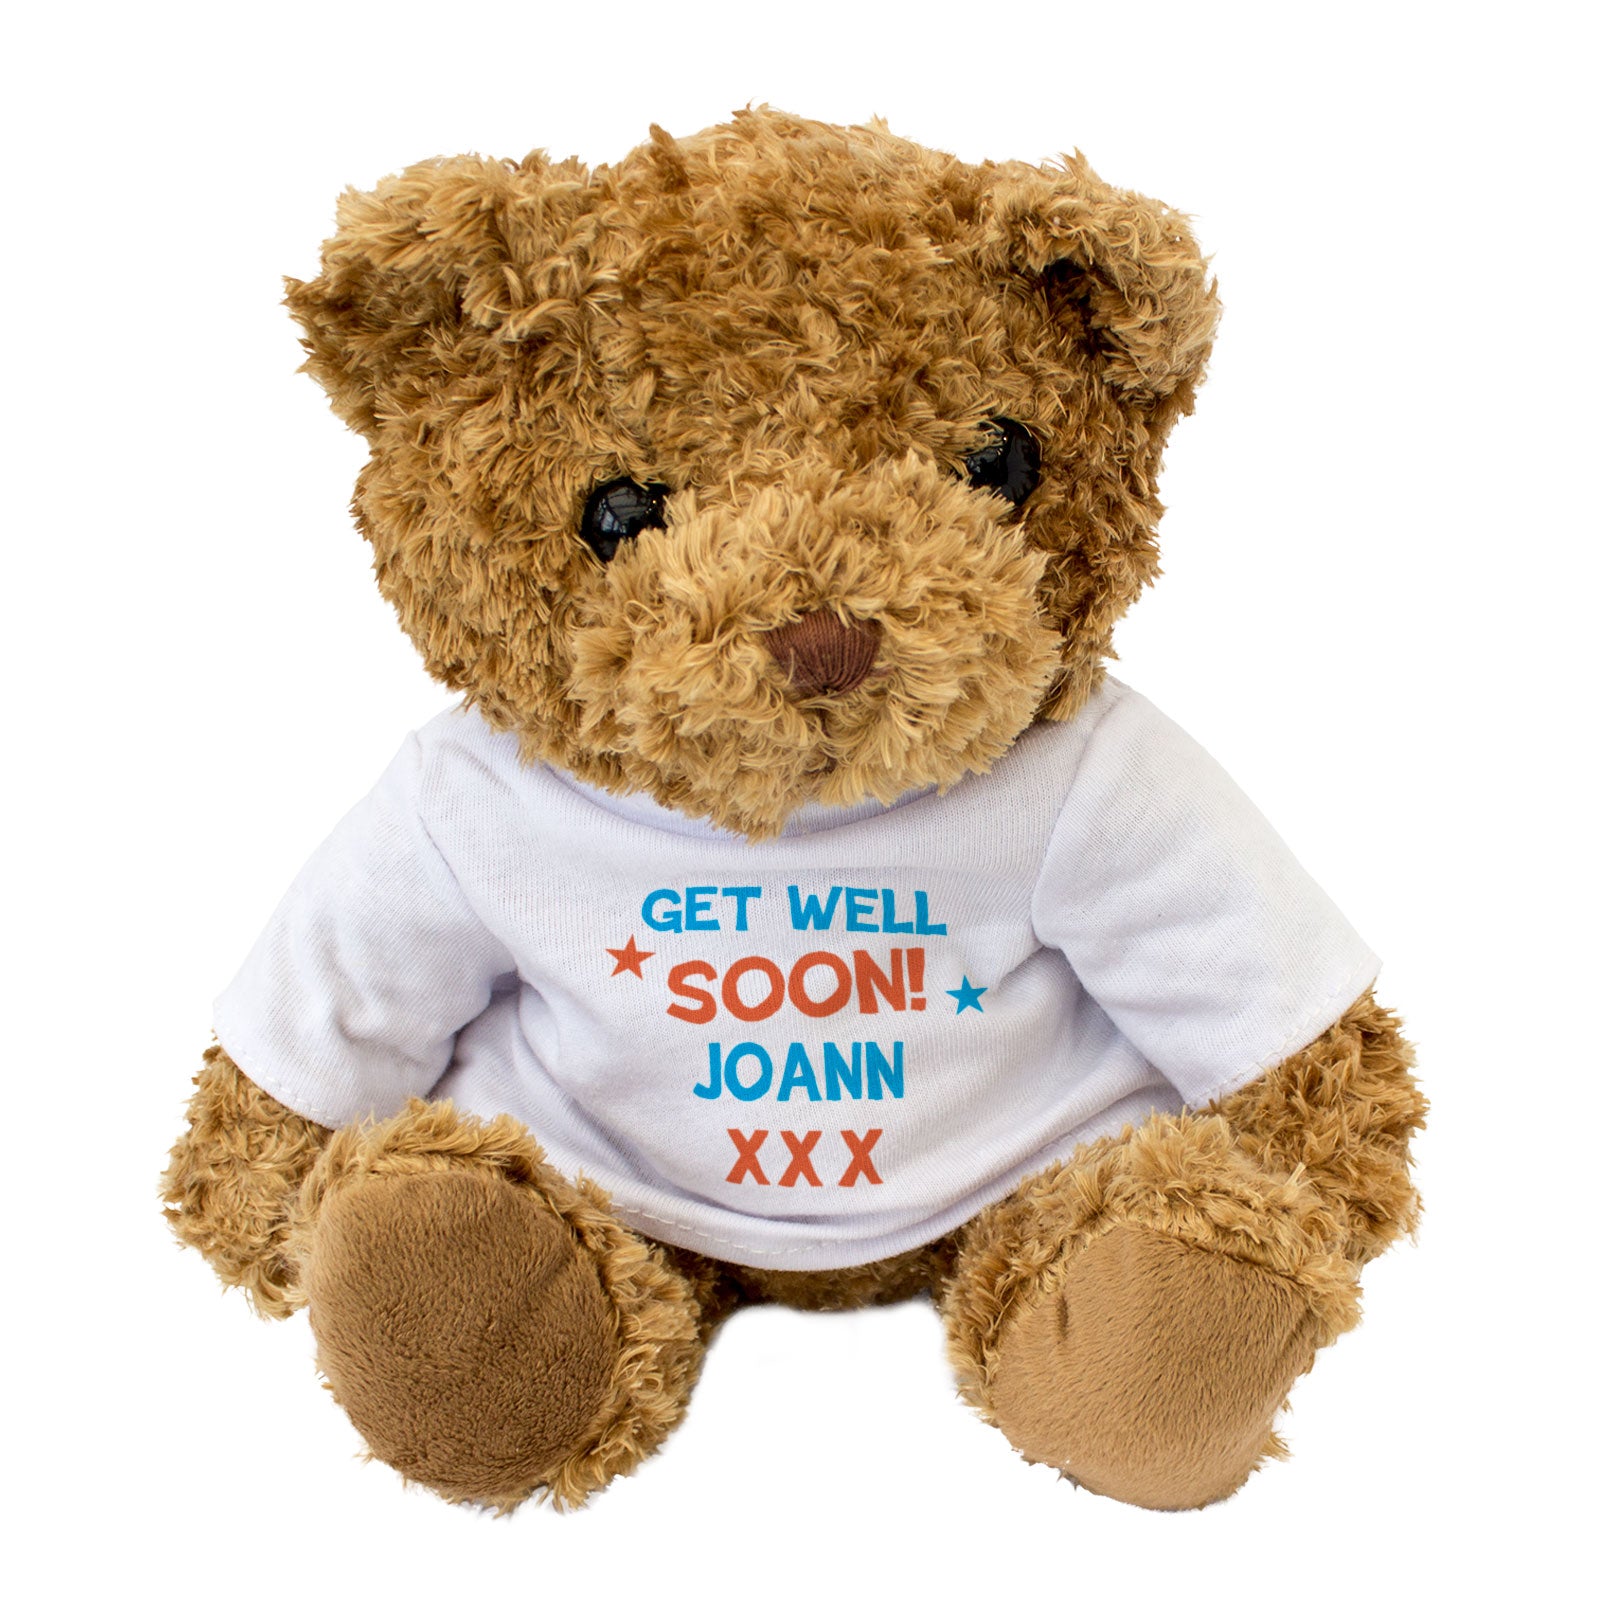 Get Well Soon Joann - Teddy Bear